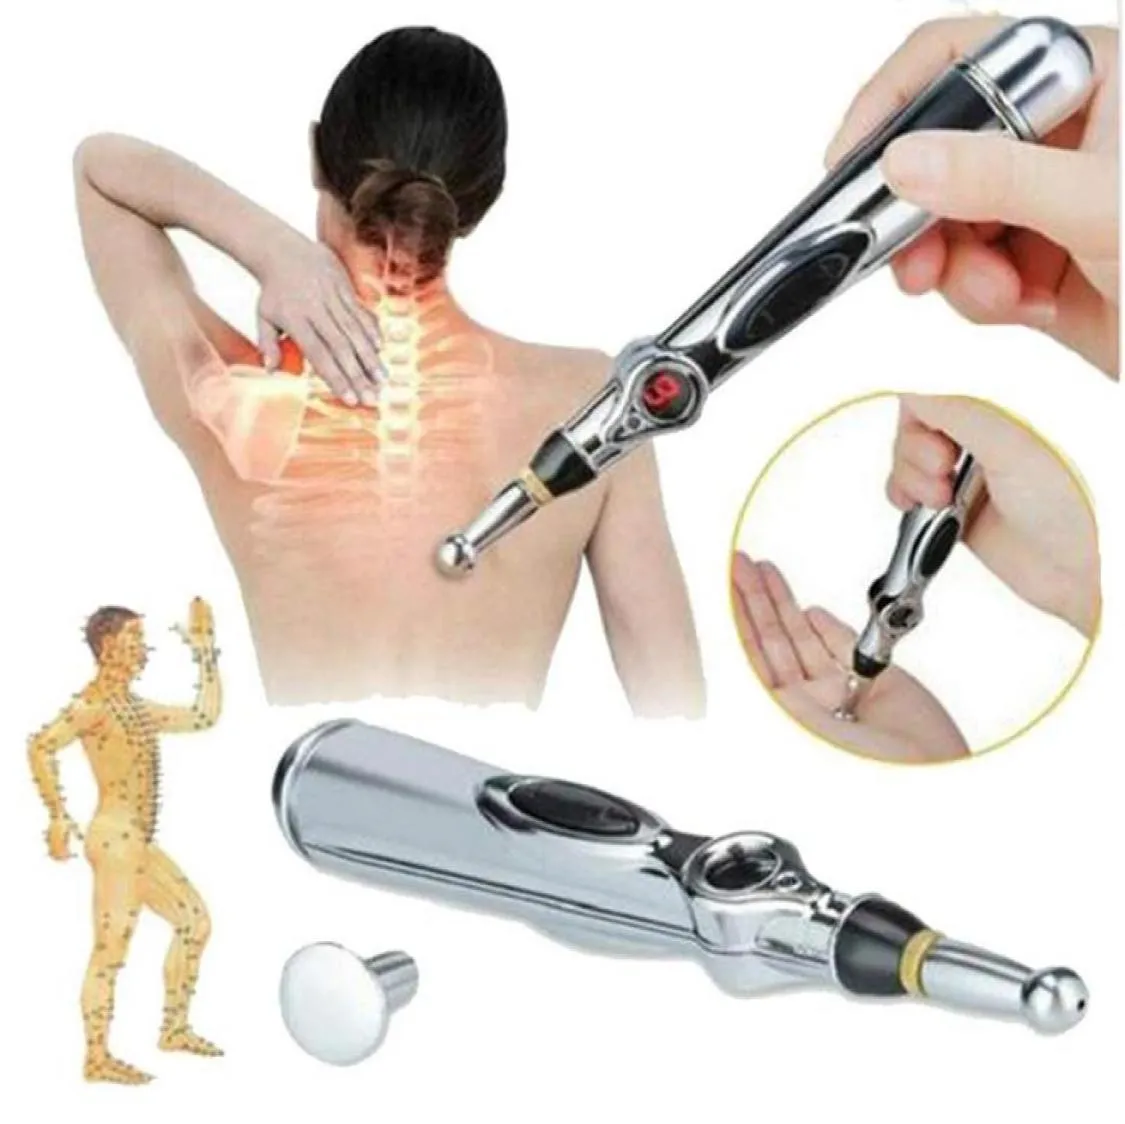 Электронная акупунктура ручка Электрическая меридианская лазерная терапия Meal Massage Pens Meridian Energy Pen Relief Tools5761817